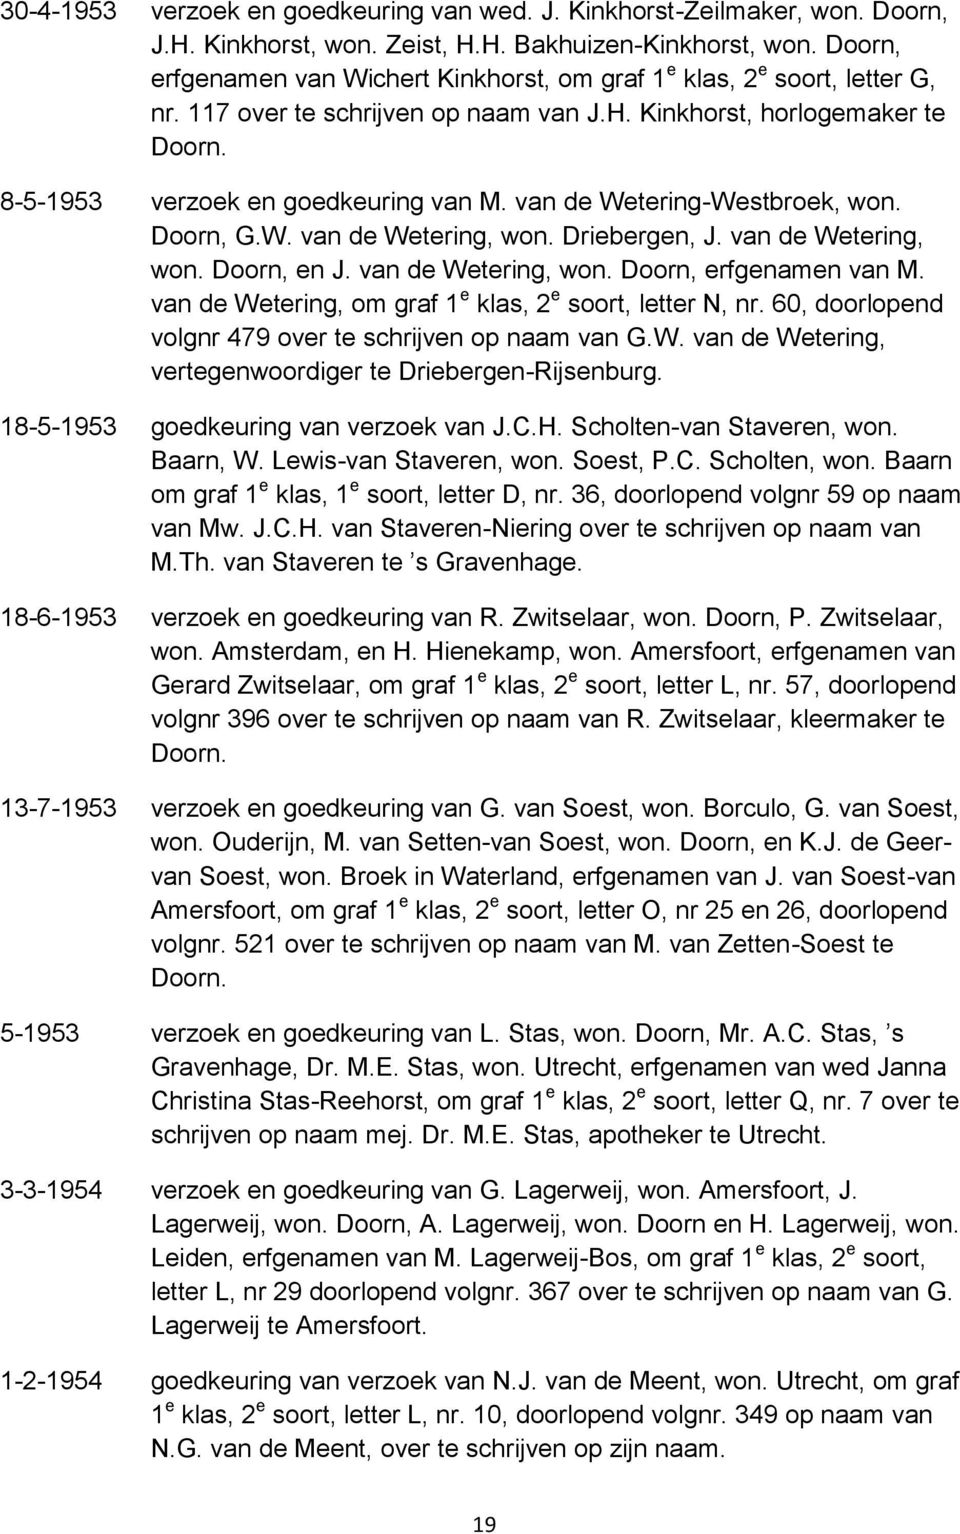 van de Wetering-Westbroek, won. Doorn, G.W. van de Wetering, won. Driebergen, J. van de Wetering, won. Doorn, en J. van de Wetering, won. Doorn, erfgenamen van M.